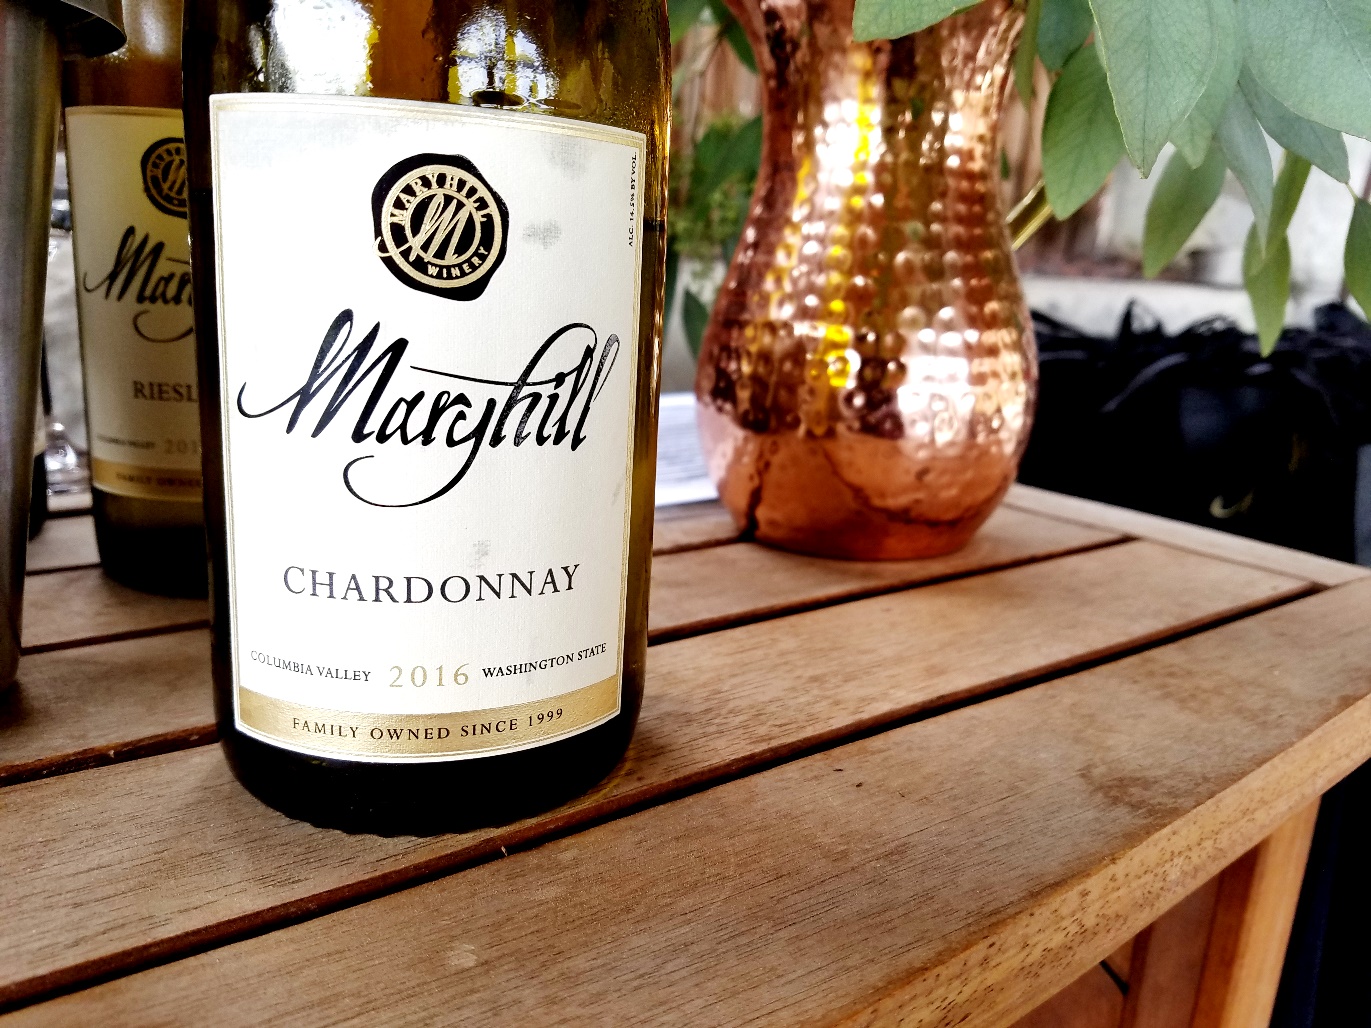 Maryhill Winery Chardonnay 2016, Columbia Valley, Washington